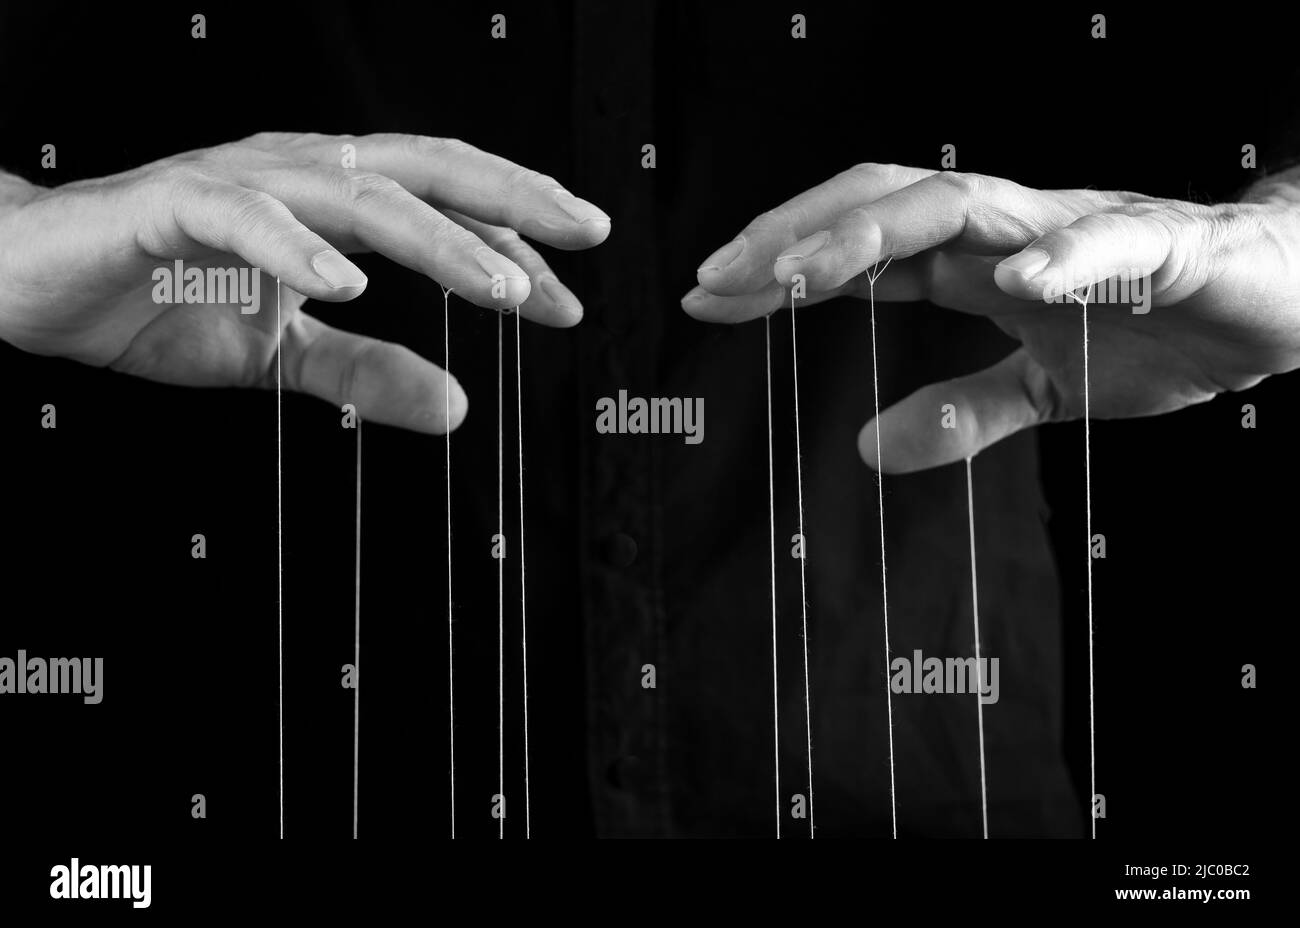 Mann Hände mit Saiten an den Fingern. Manipulation, Kontrolle, Macht, Missbrauch Konzept. Schwarz und Weiß. Hochwertige Fotos Stockfoto